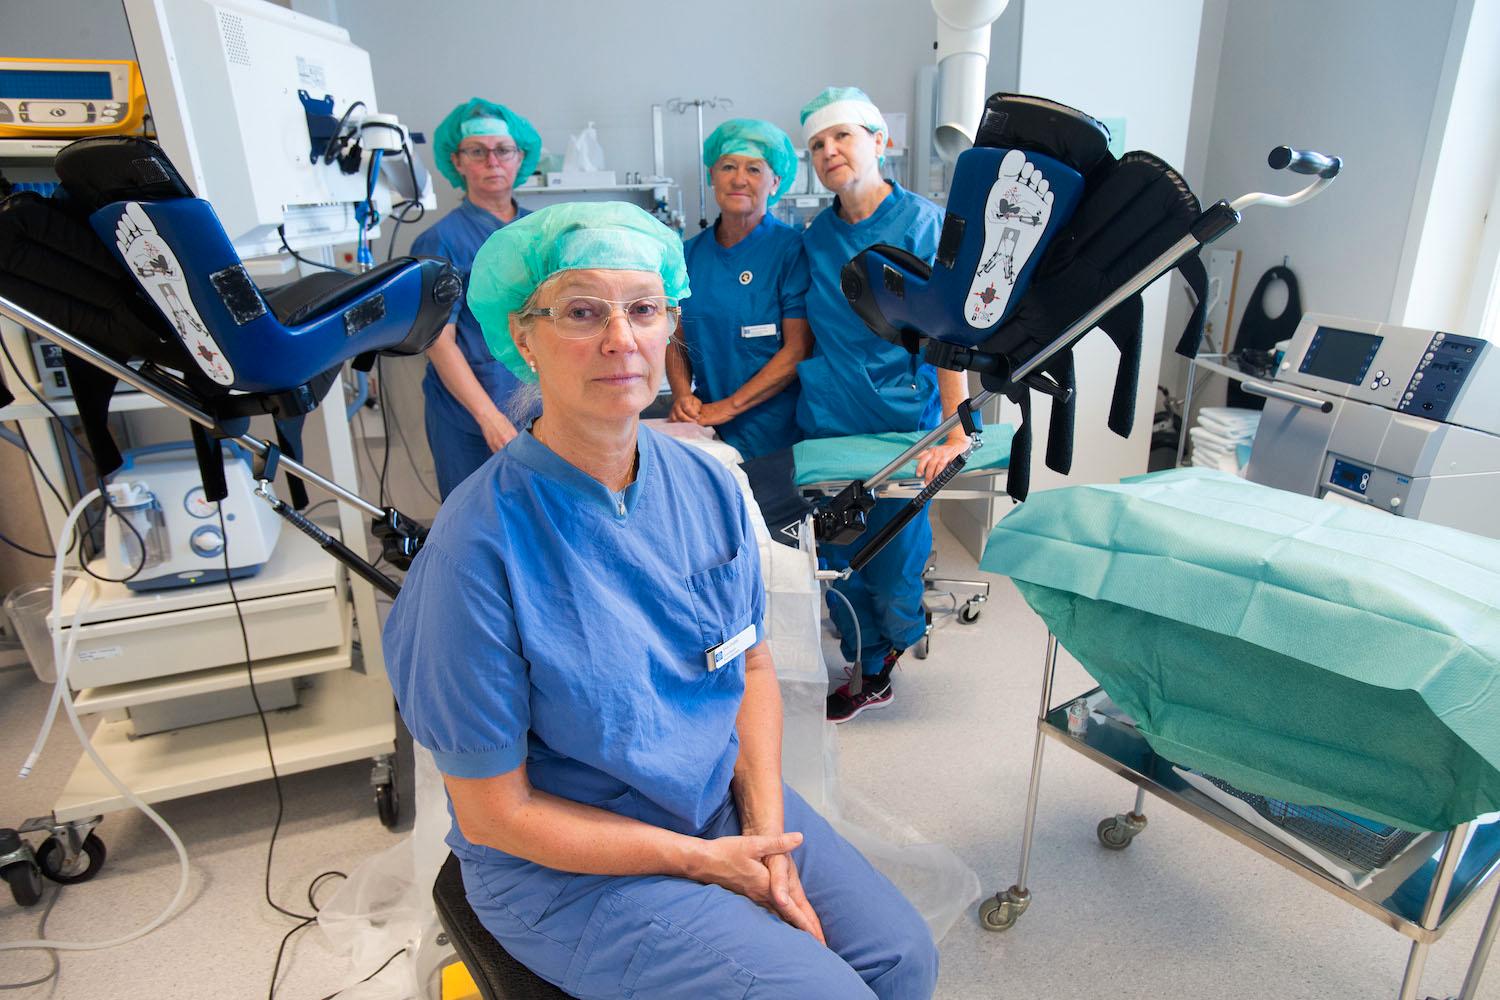 Eva Uustal med sitt operationsteam på kvinnokliniken på Linköpings universitetssjukhus.